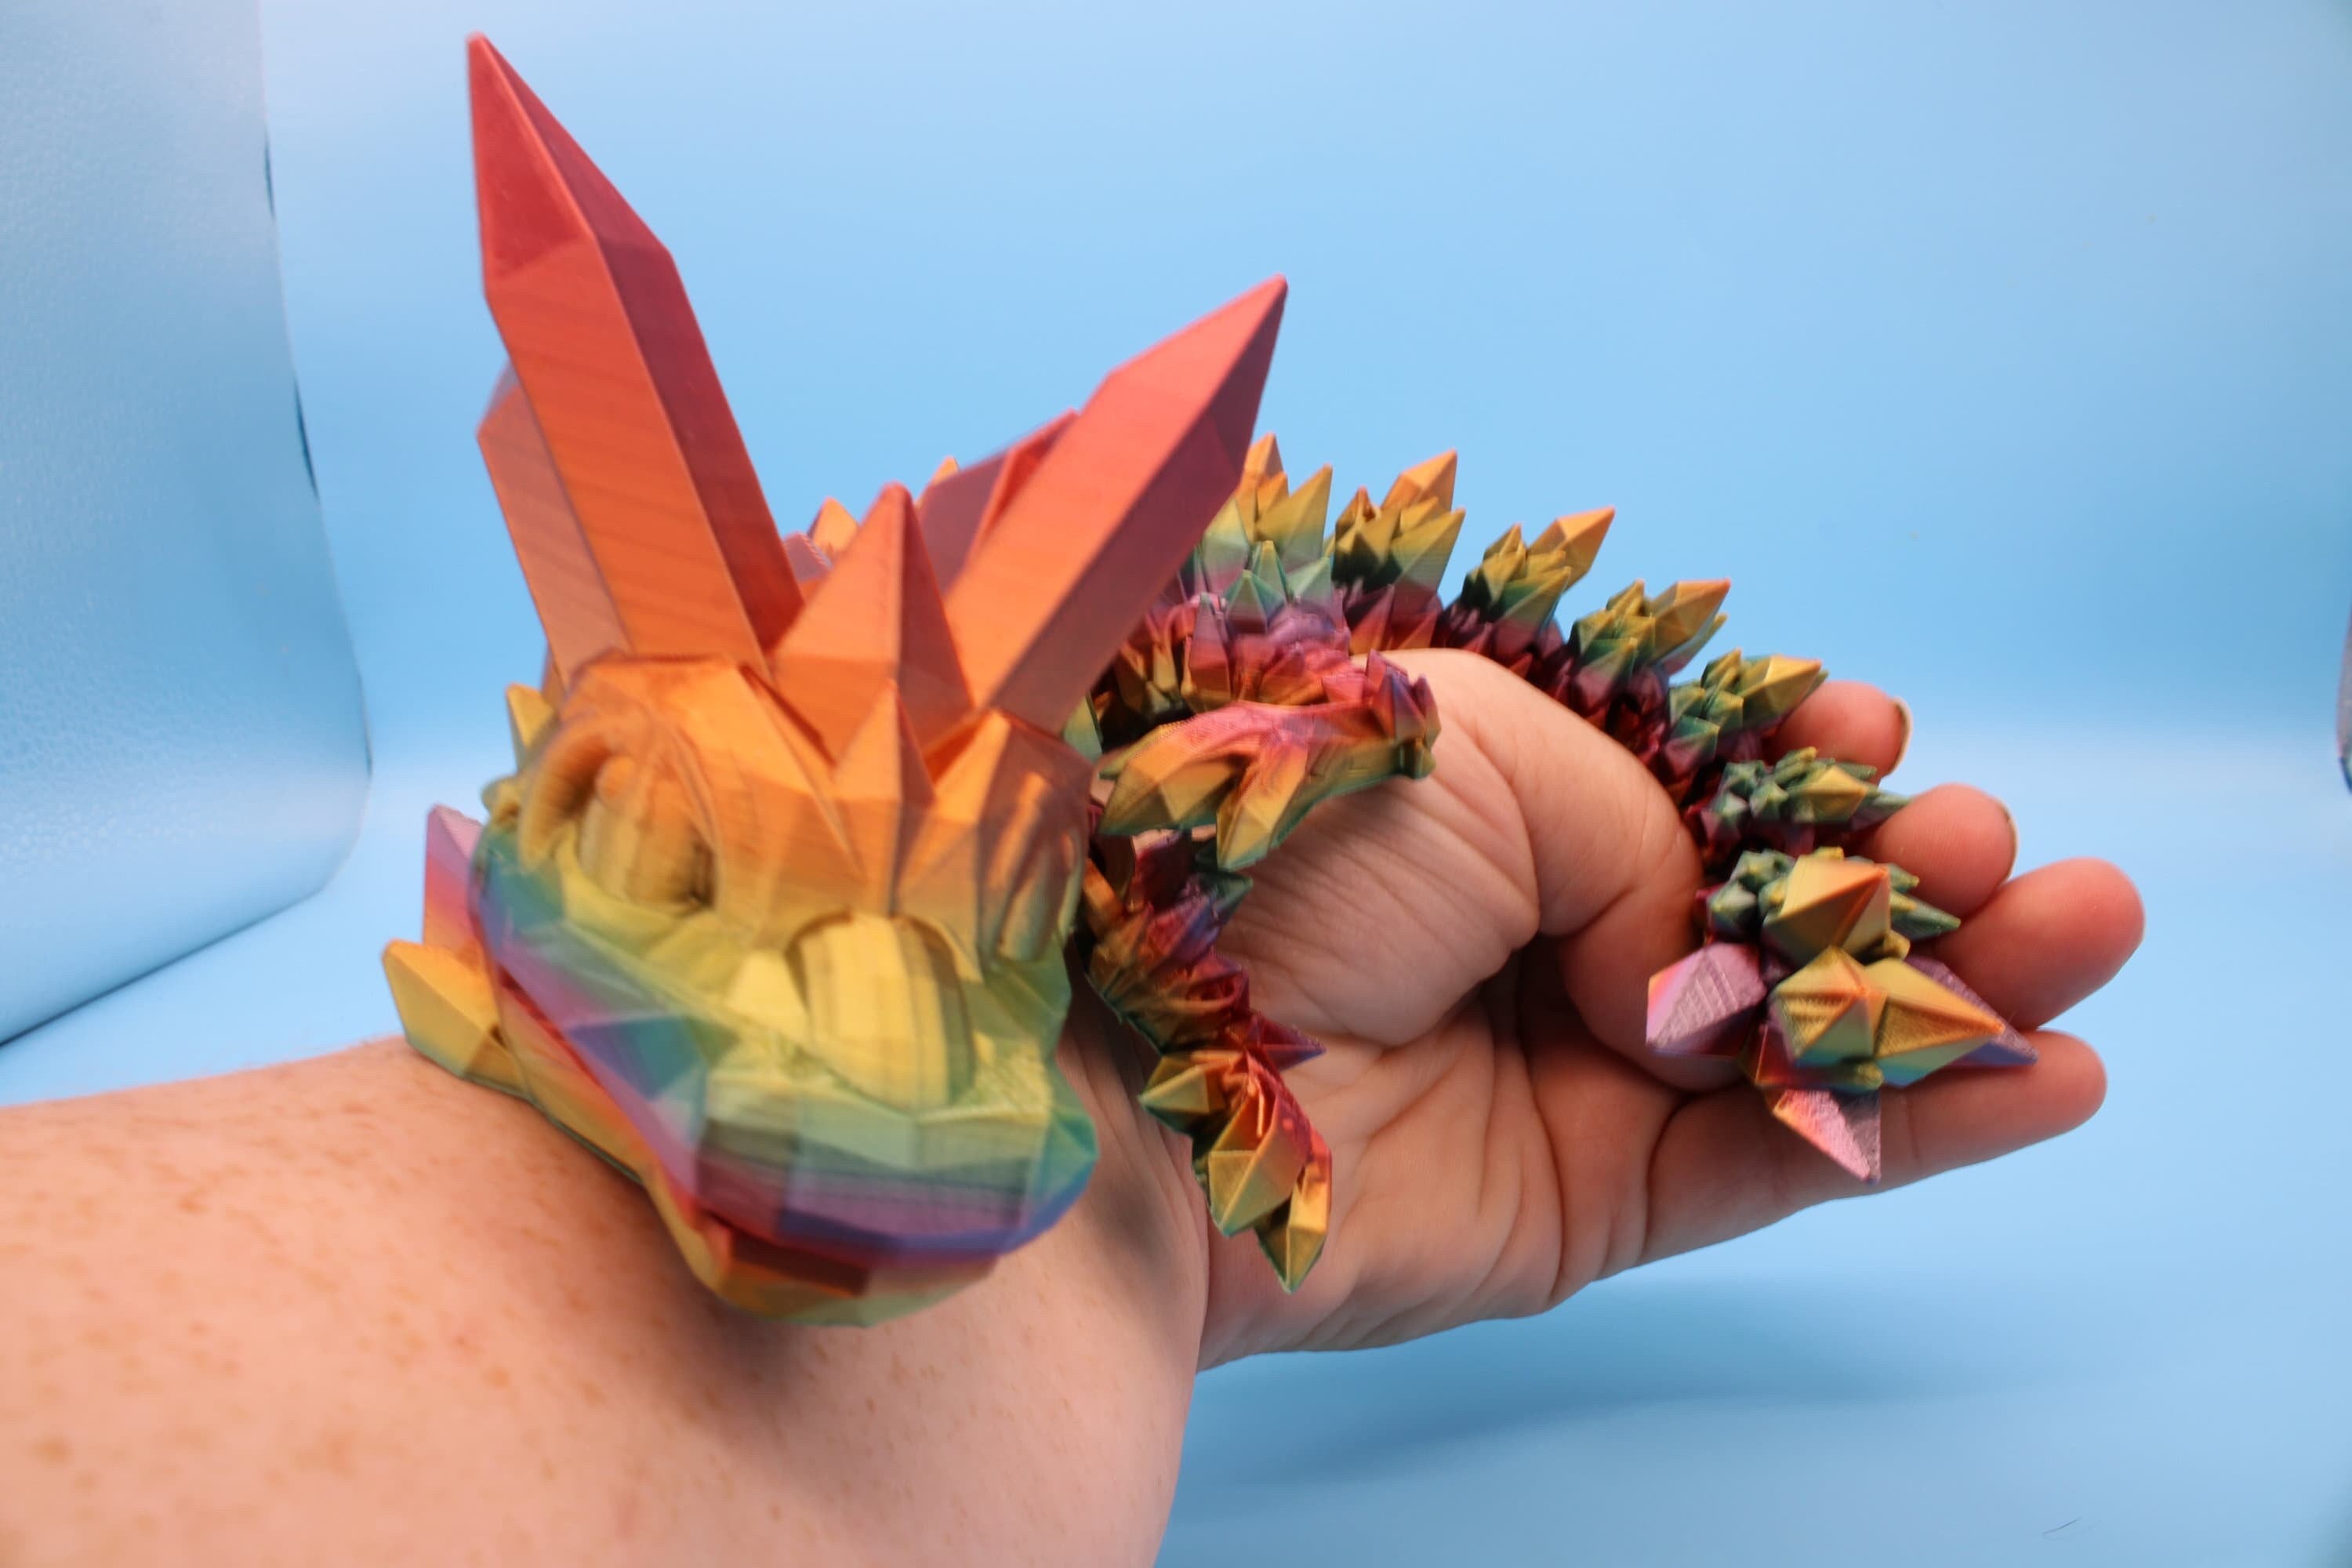 Rainbow Baby Dragon | 3D Printed Crystal Dragon | 11.5 inches Dragon Friend | Sensory Toy | Fidget Toy | Flexi Dragon.